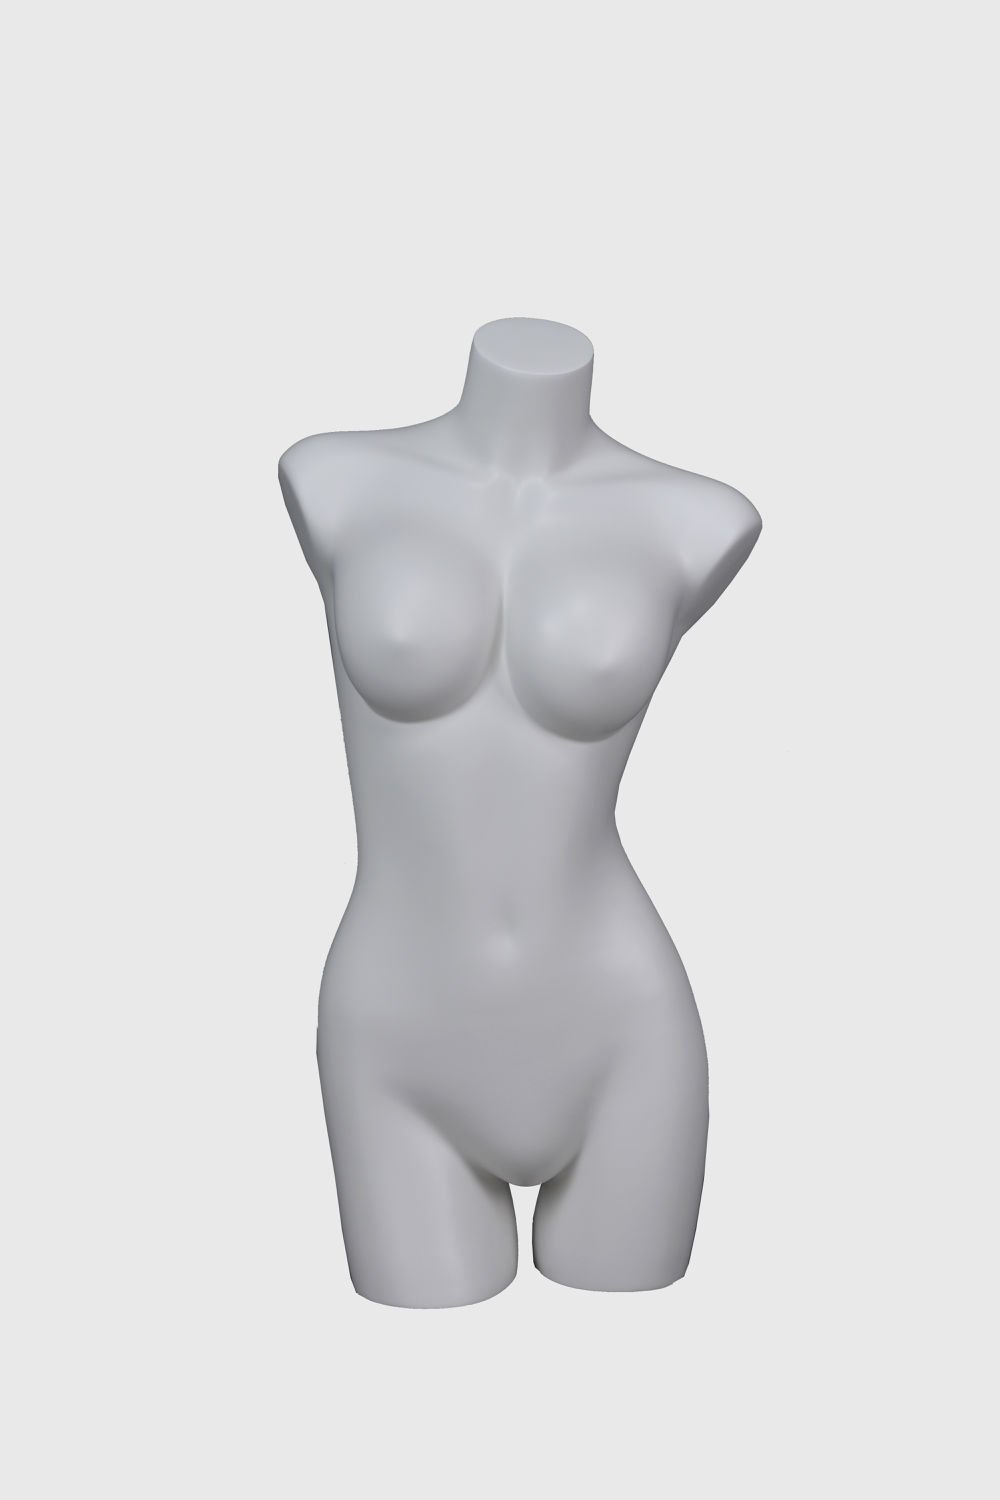 女半身模特人体橱窗展示 内衣模特道具